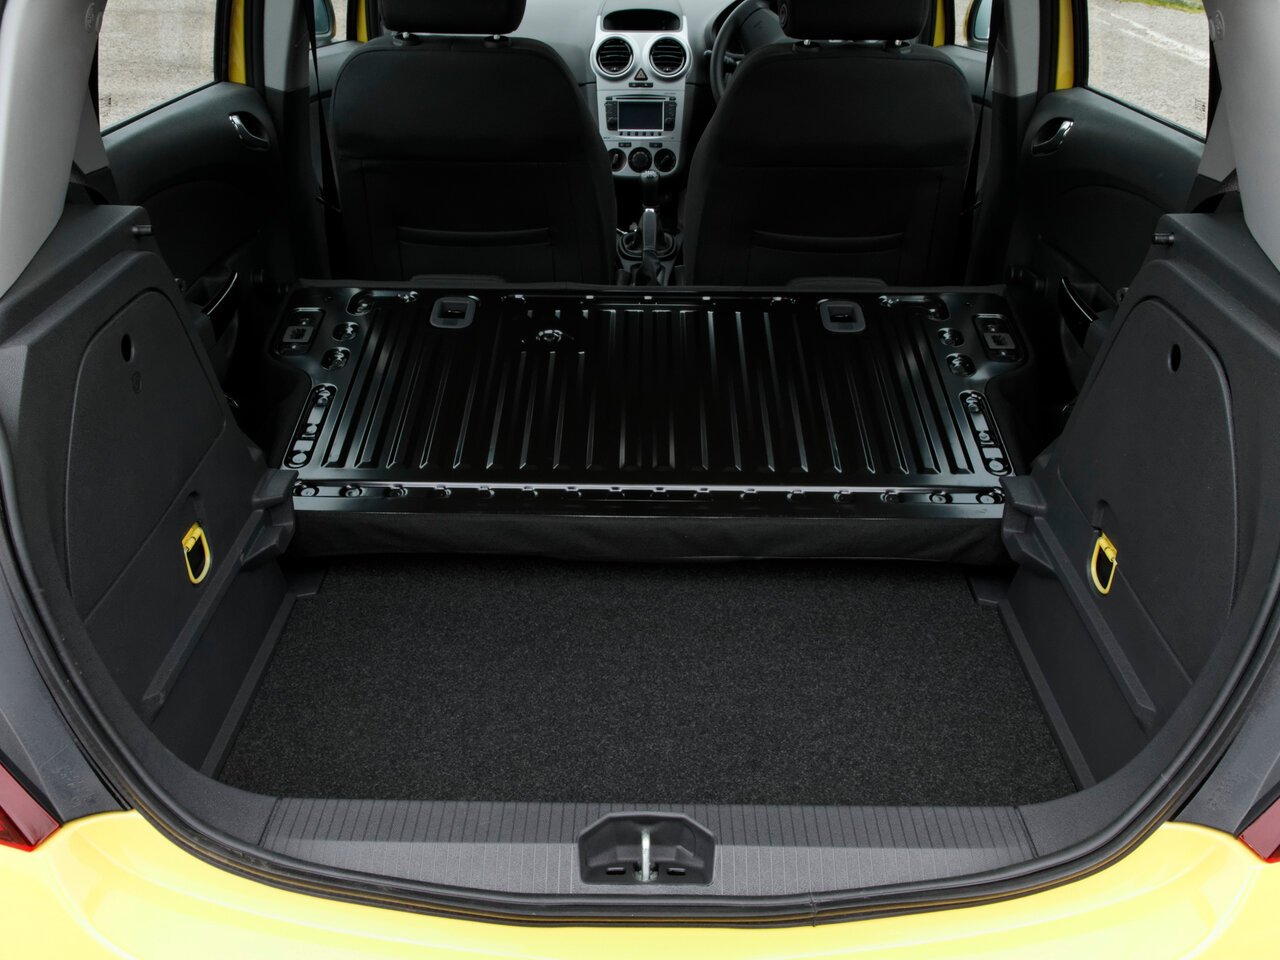 Opel Corsa багажник